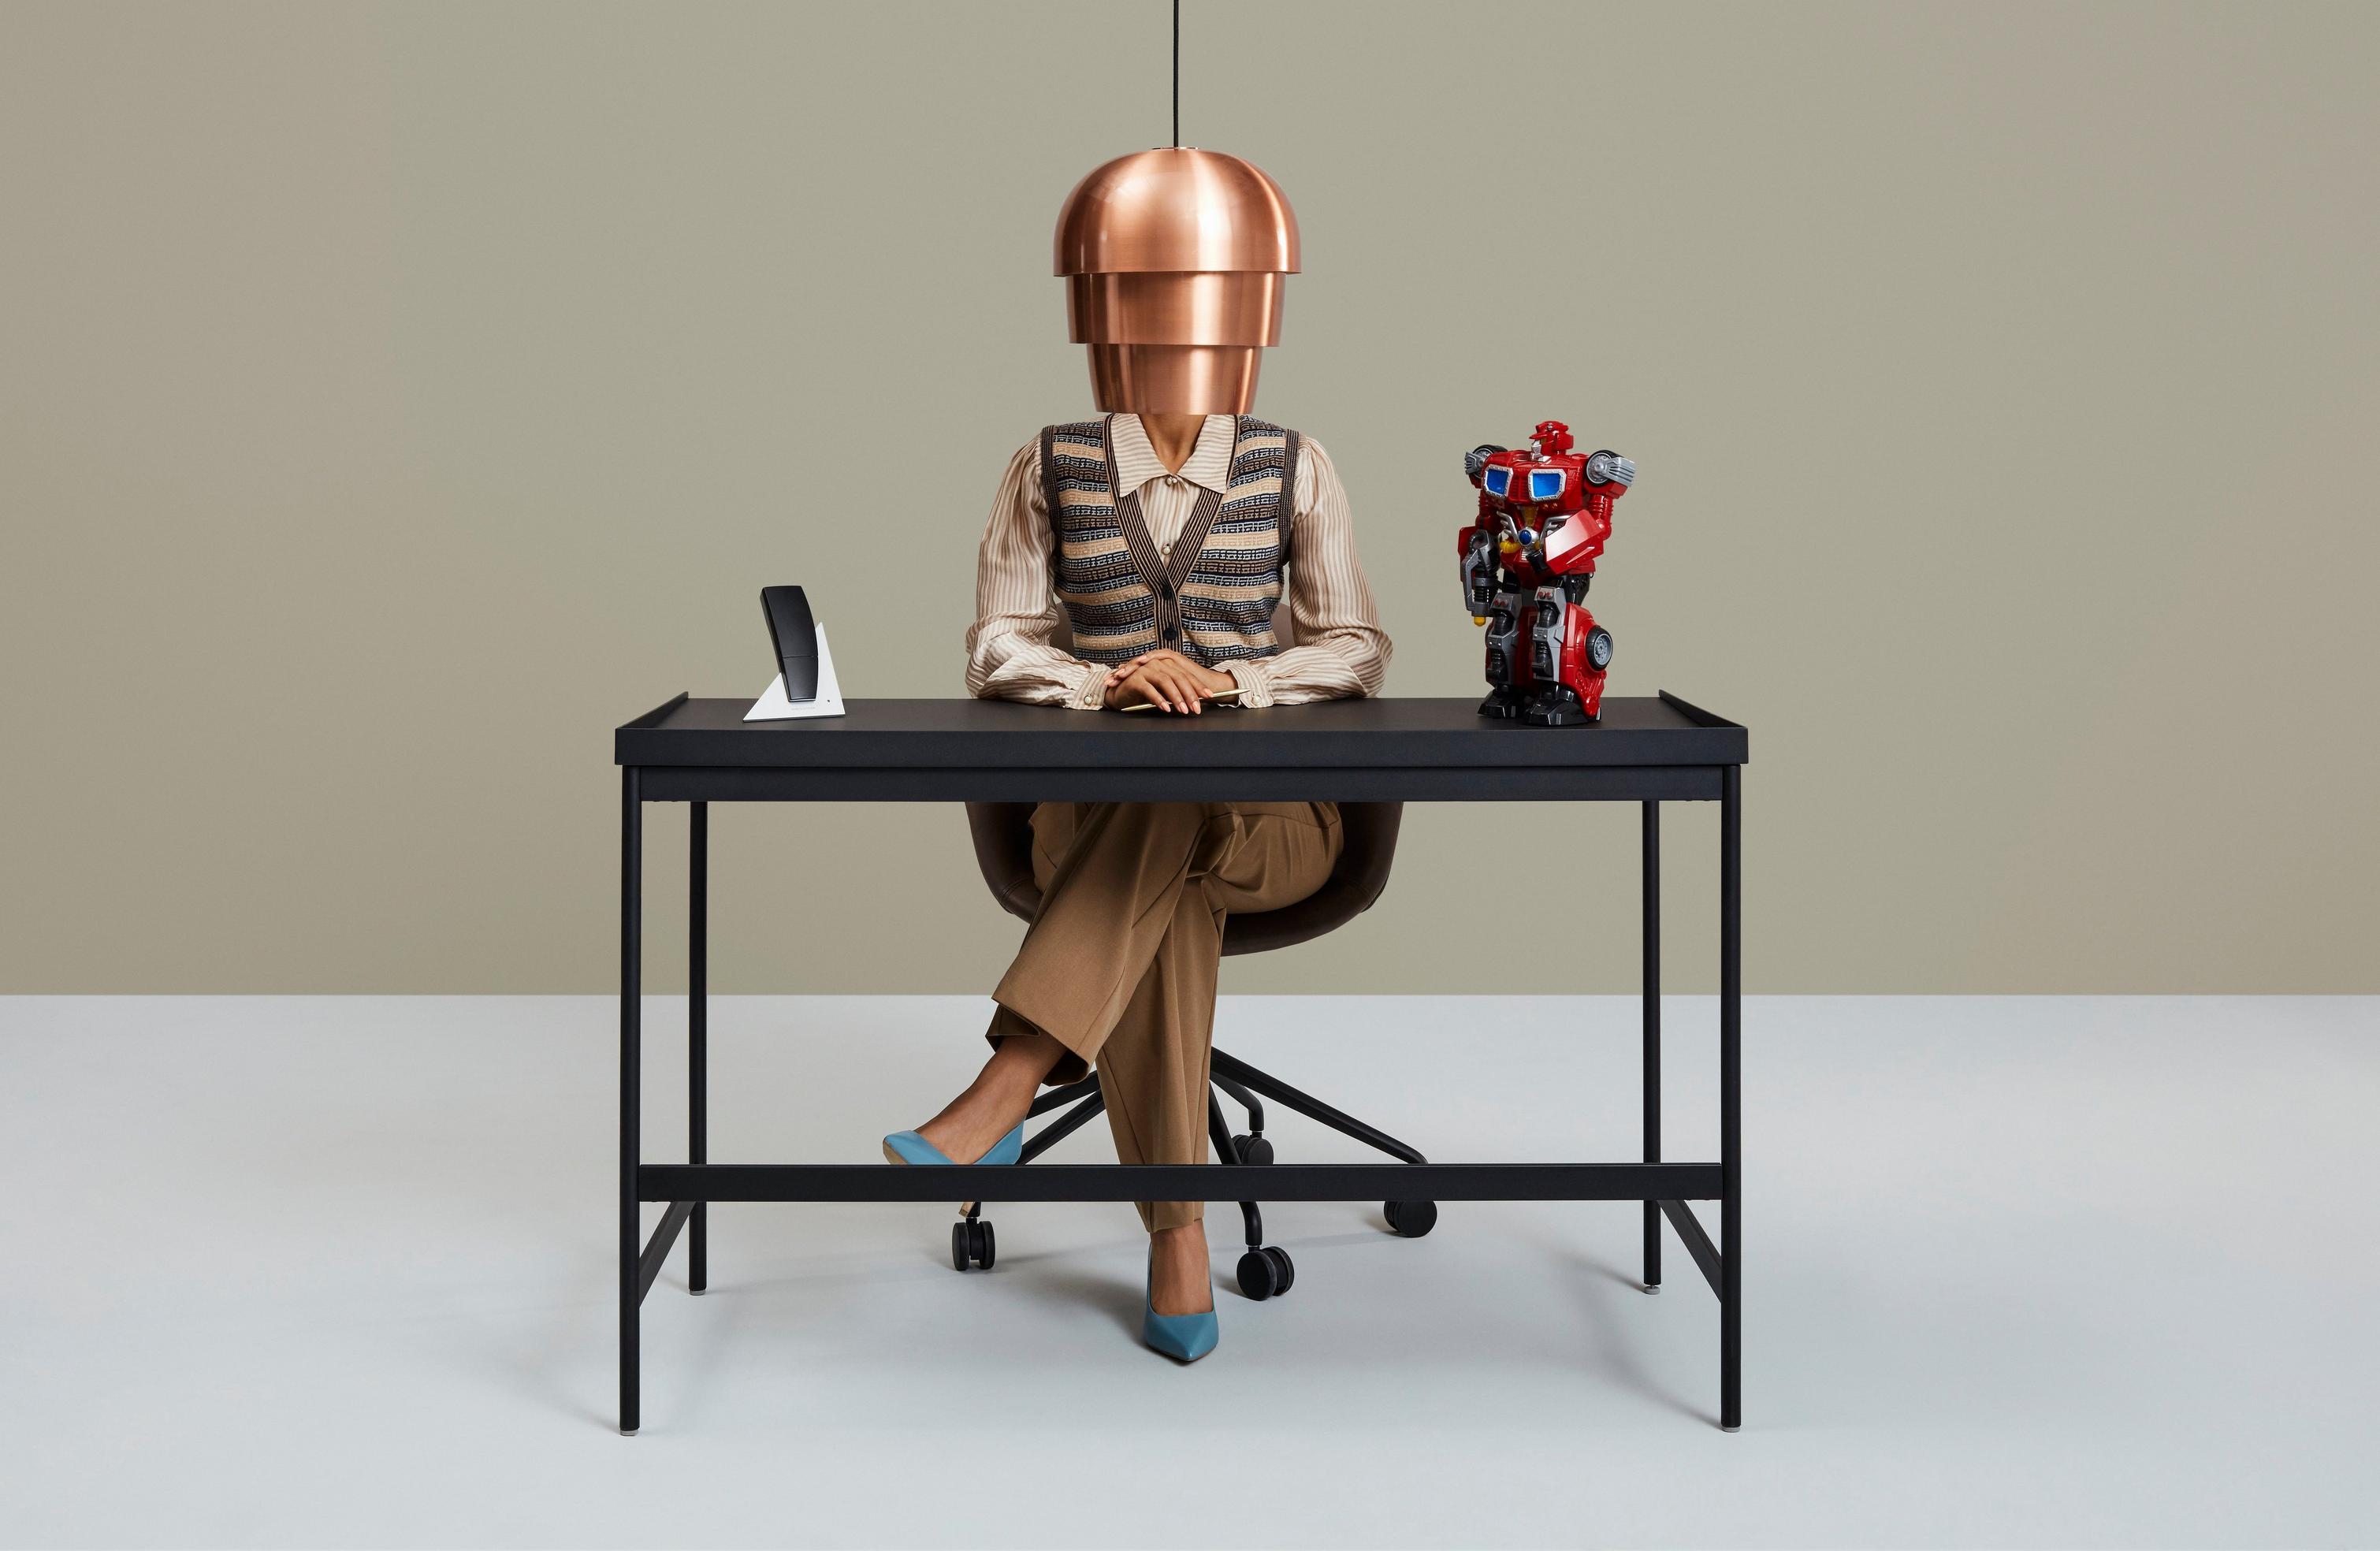 Henkilö työpöydän ääressä, jolla on valaisin, puhelin ja värikäs robottihahmo.